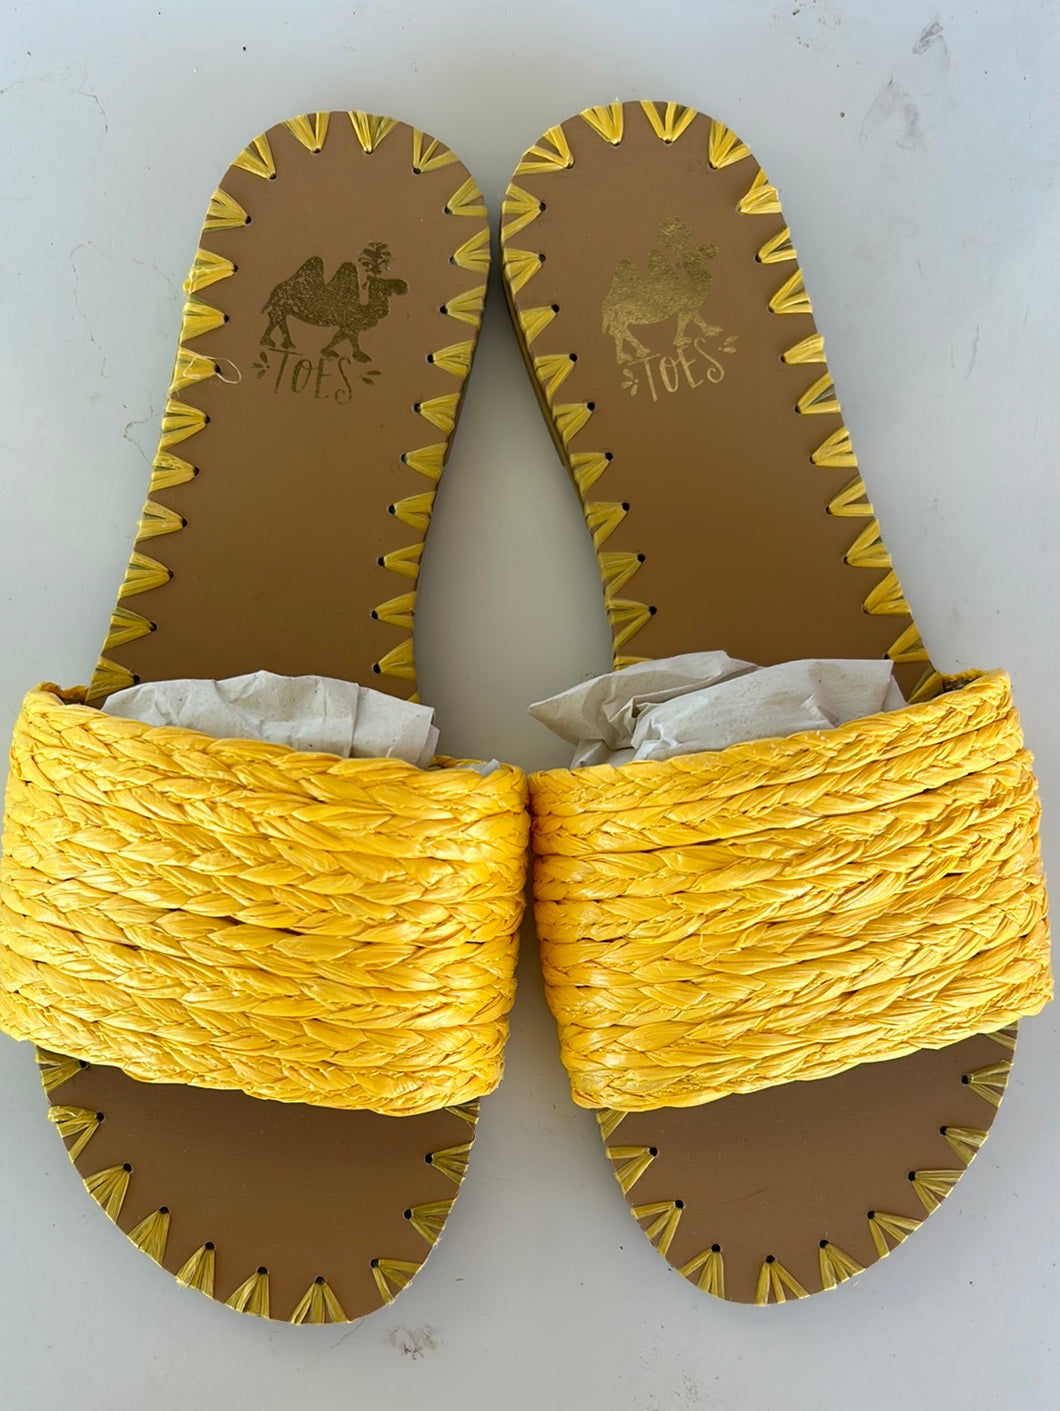 Capri sandals